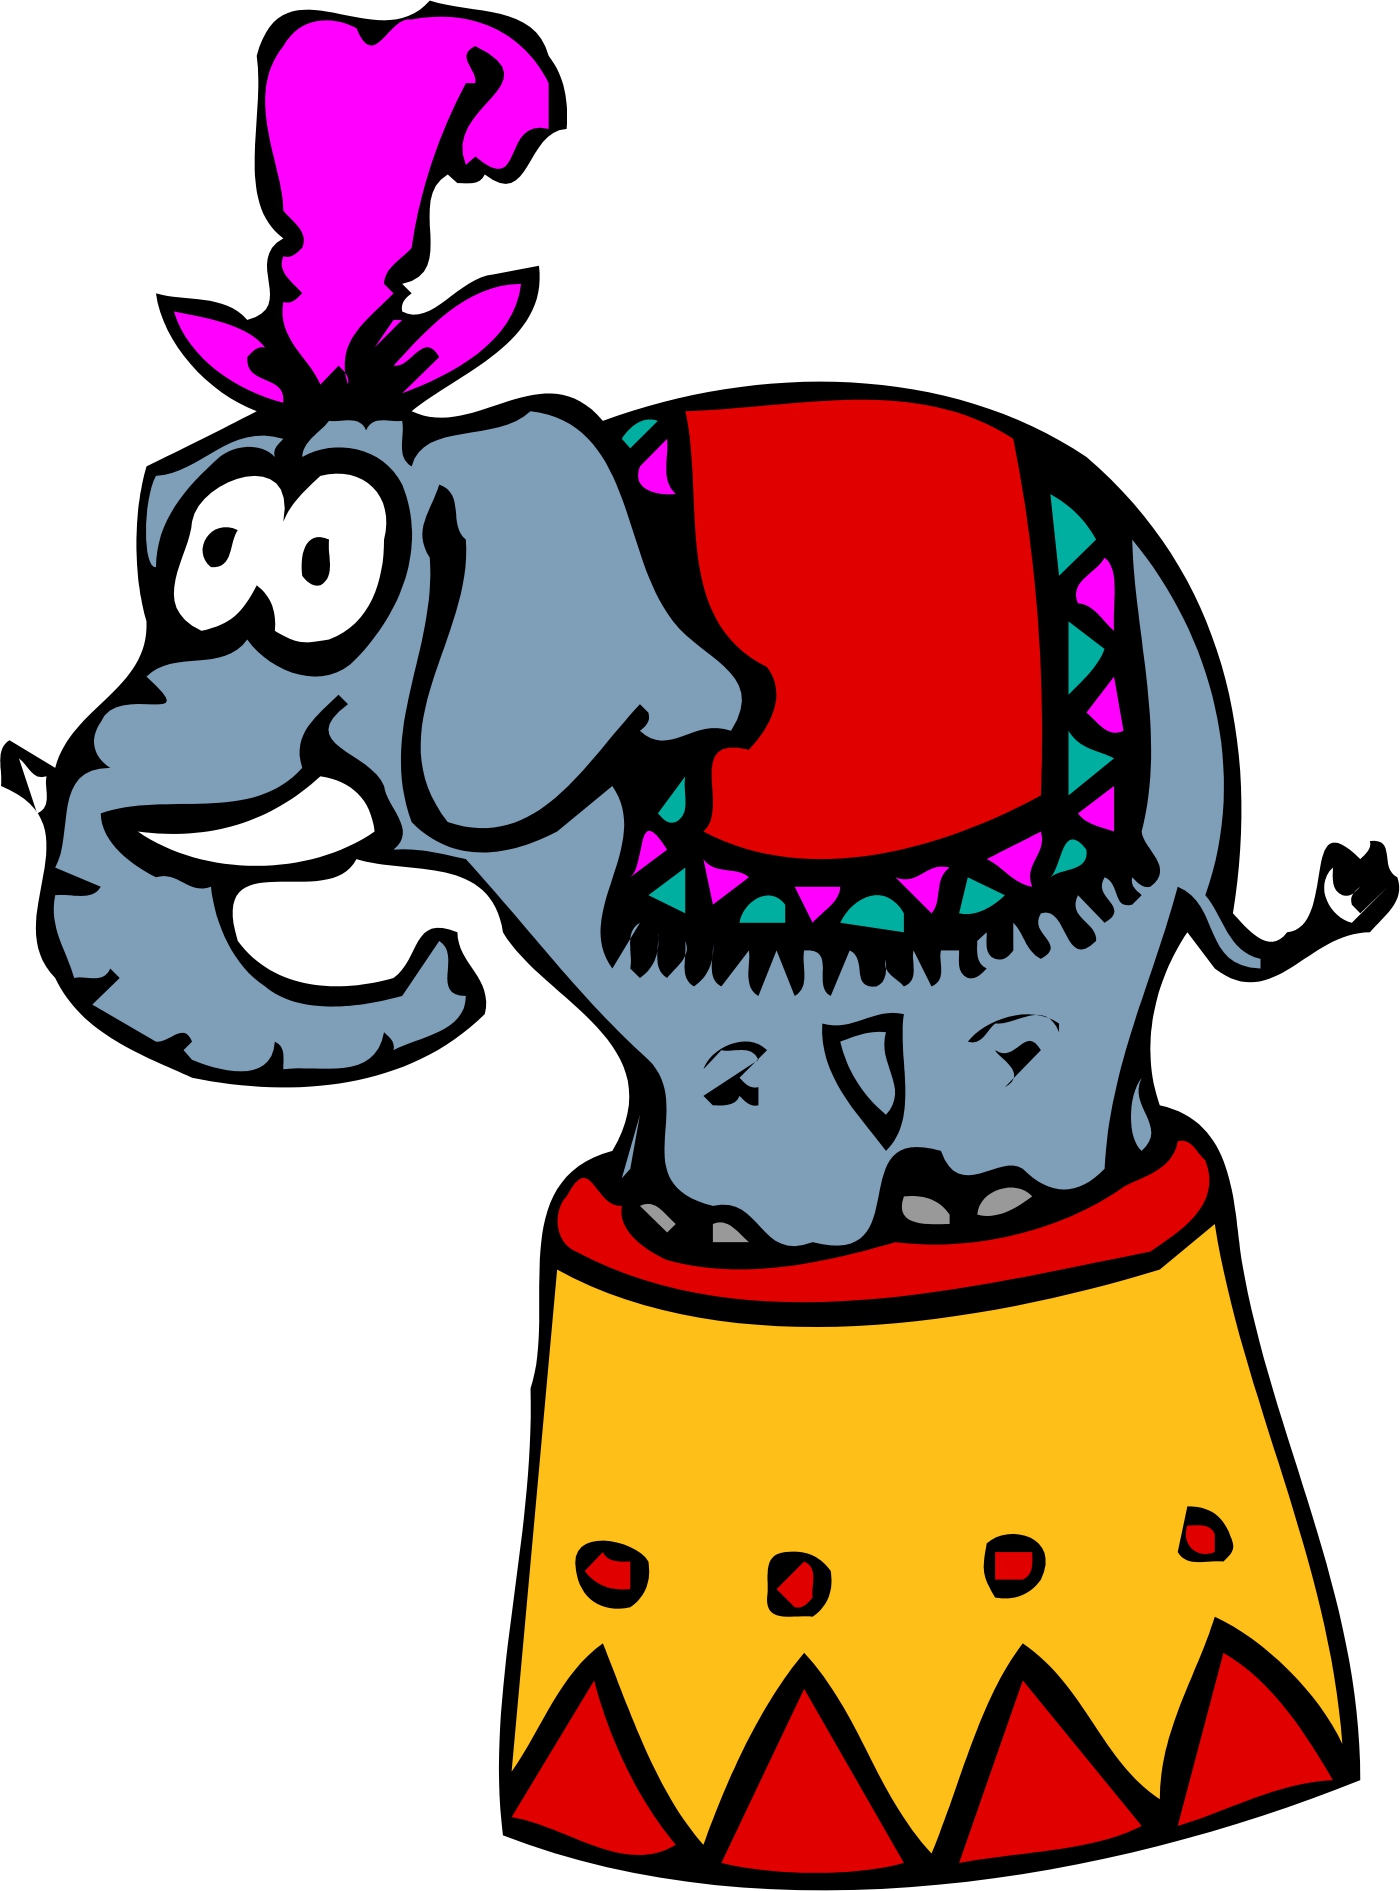 Cartoon Circus Elephant - Clipart library